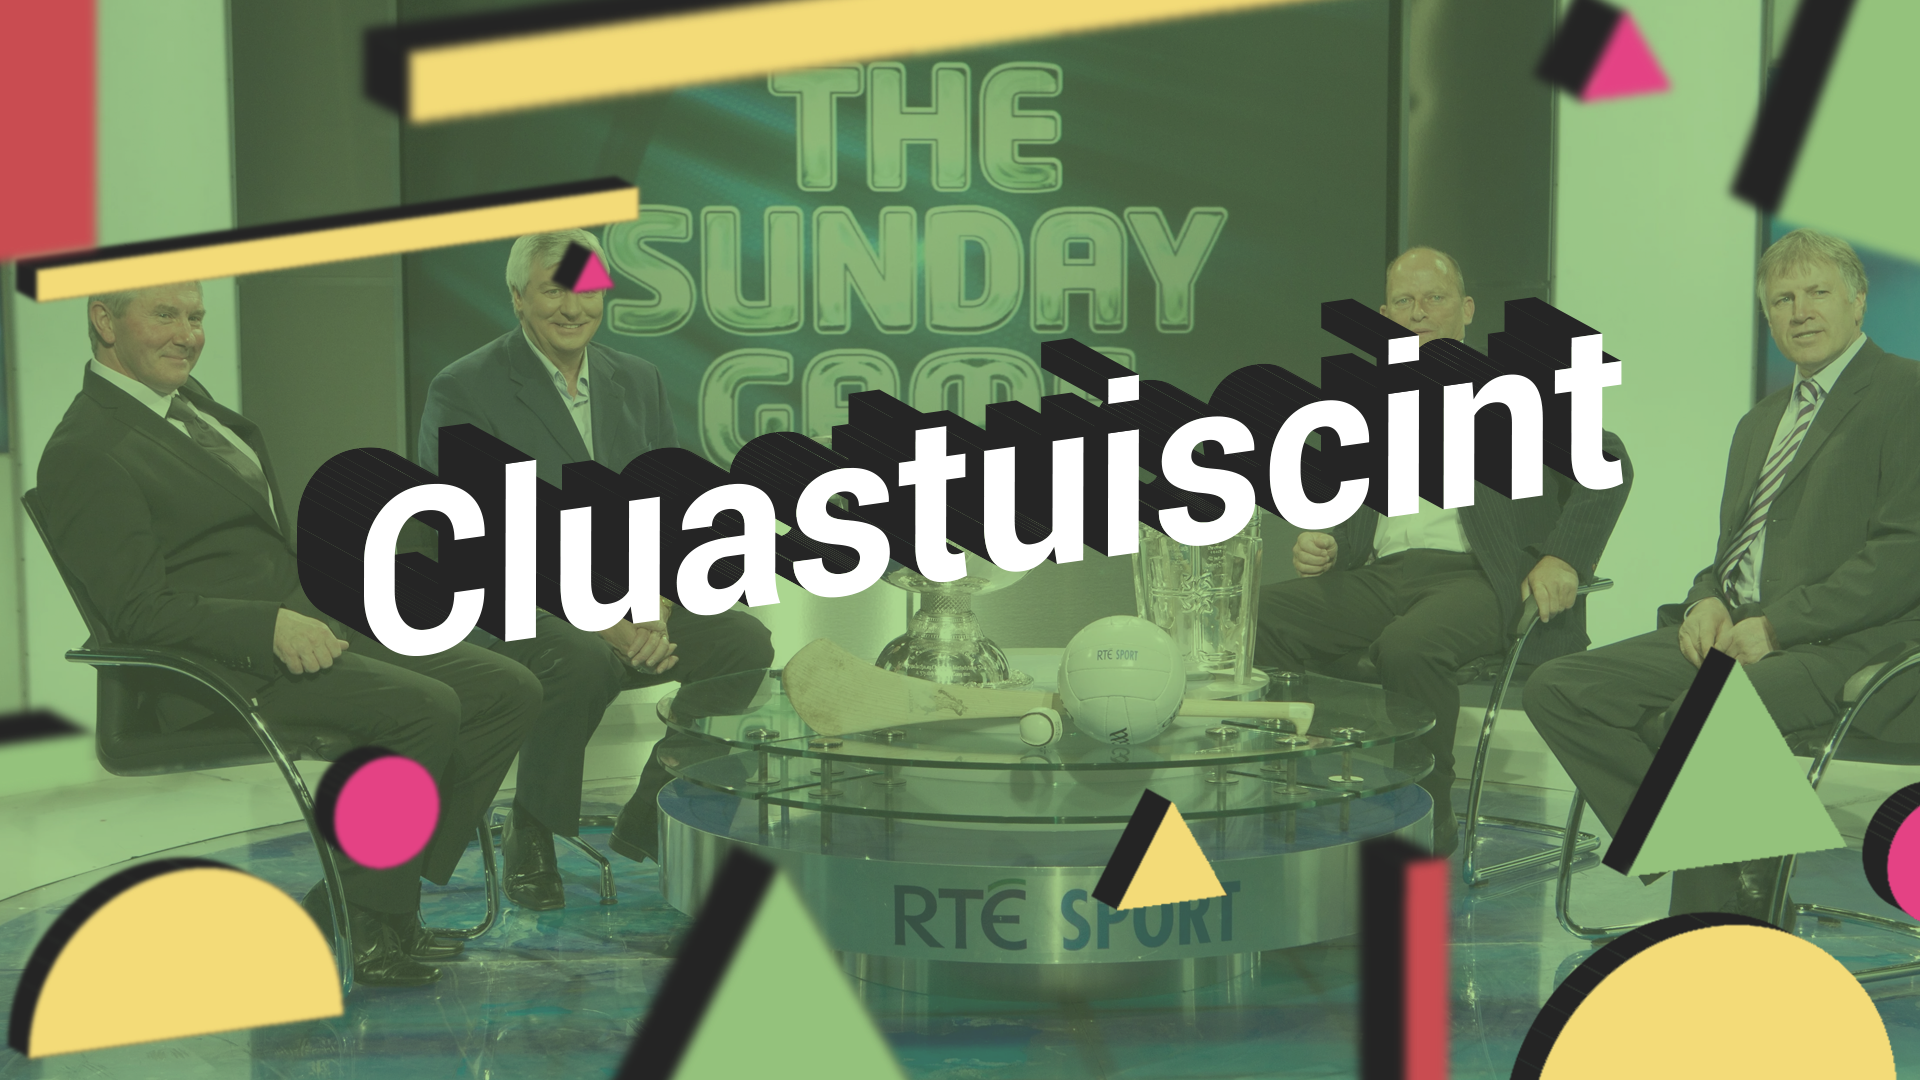 CLUASTUISCINT: An bhfuil uair na cinniúna buailte le The Sunday Game